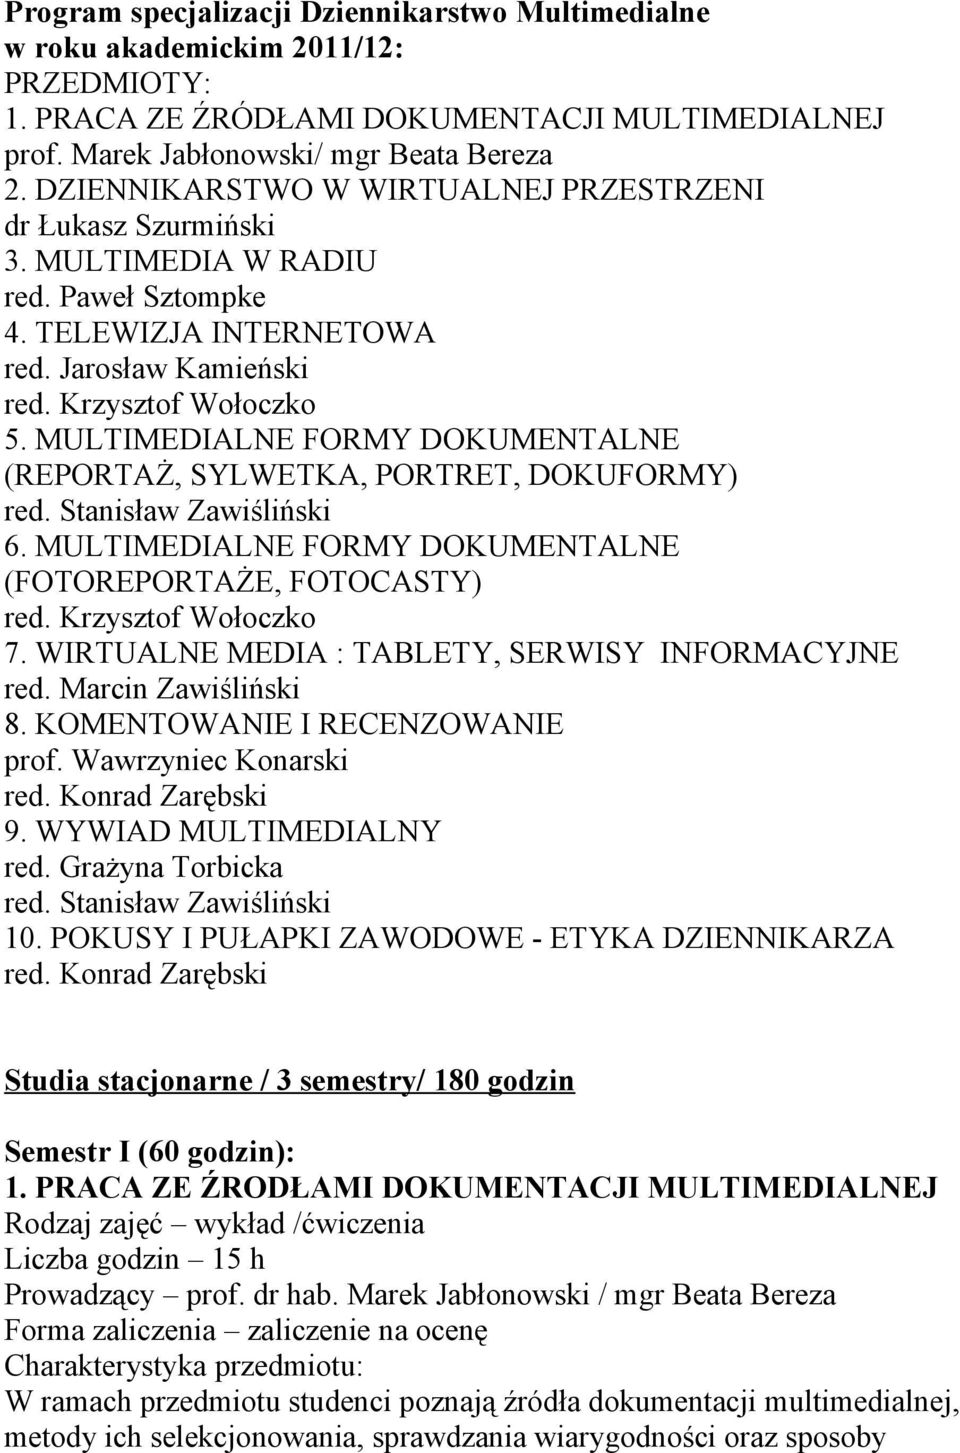 MULTIMEDIALNE FORMY DOKUMENTALNE (REPORTAŻ, SYLWETKA, PORTRET, DOKUFORMY) red. Stanisław Zawiśliński 6. MULTIMEDIALNE FORMY DOKUMENTALNE (FOTOREPORTAŻE, FOTOCASTY) red. Krzysztof Wołoczko 7.